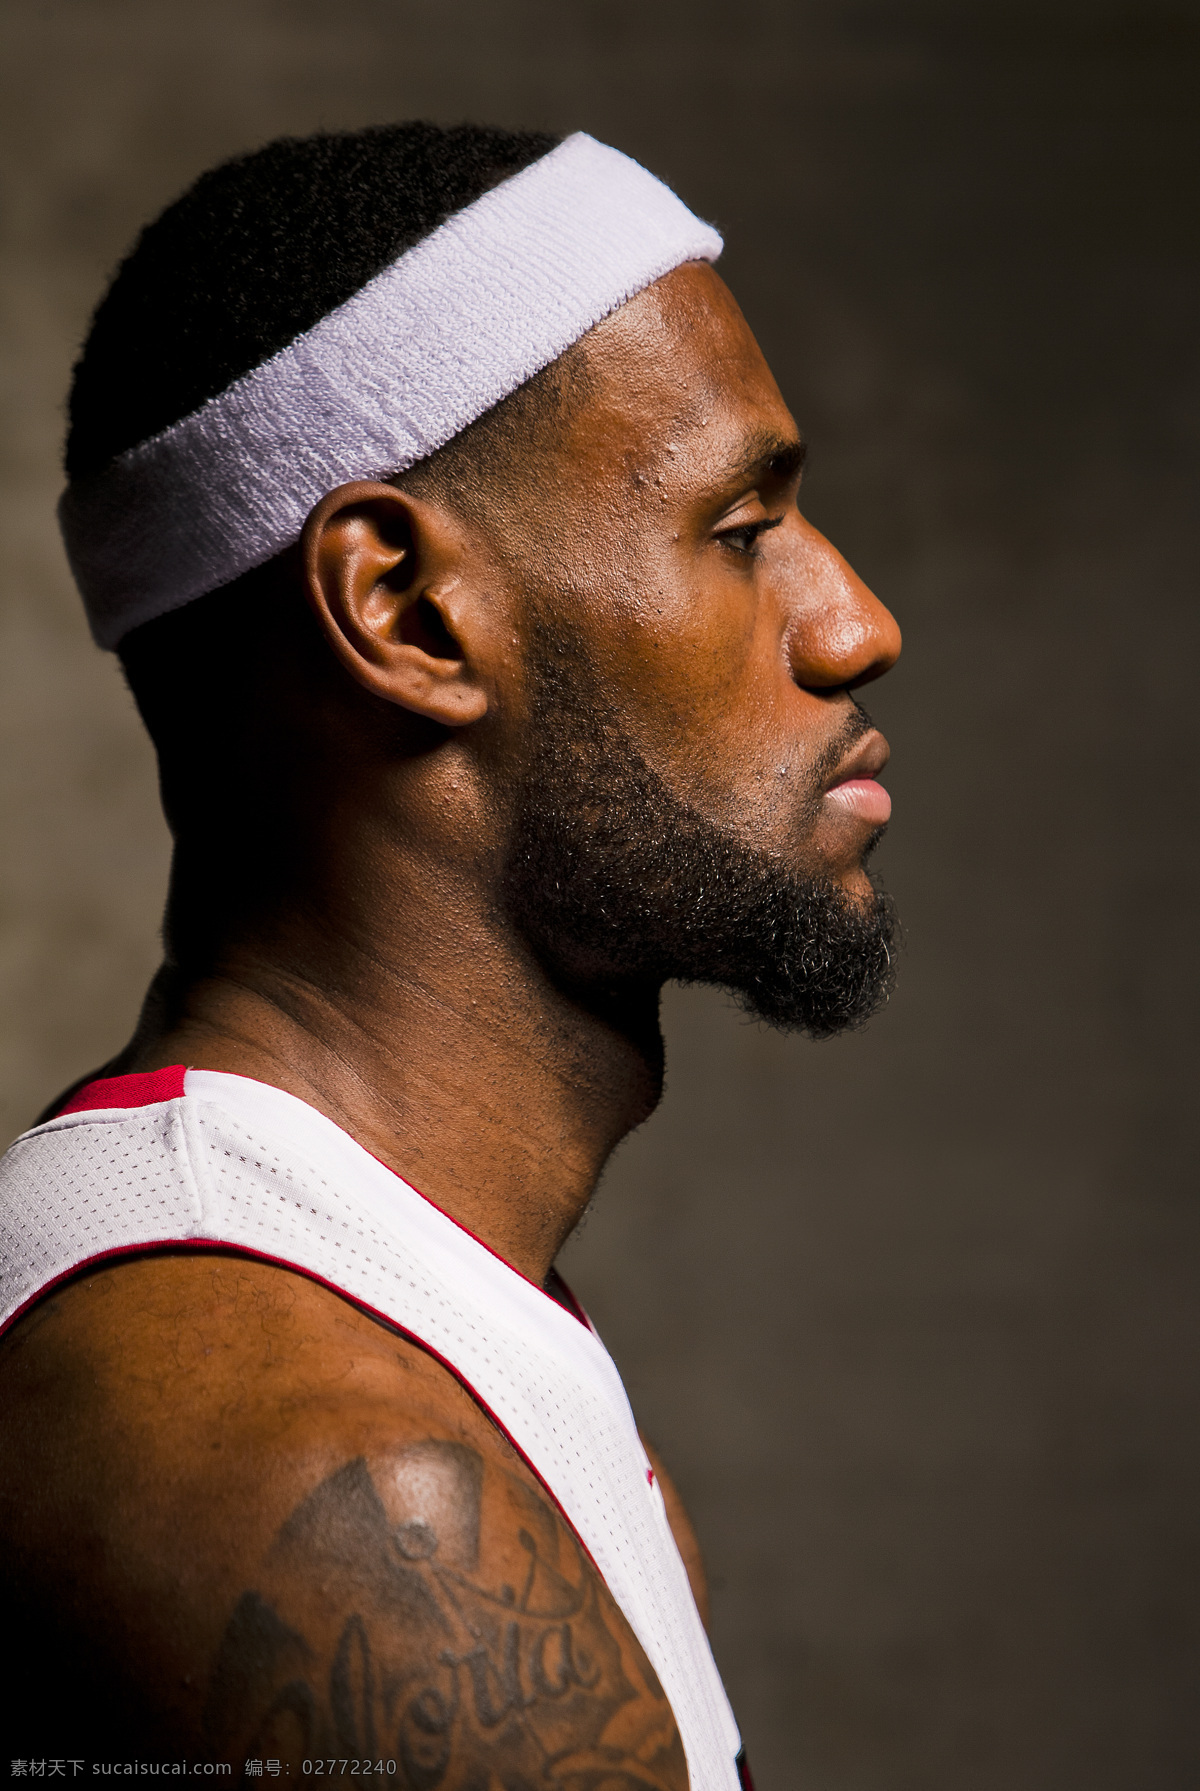 詹姆斯 新 赛季 媒体 勒布朗 lebron james 勒布朗詹姆斯 nba 篮球 宣传照 2012 媒体照 人物摄影 人物图库